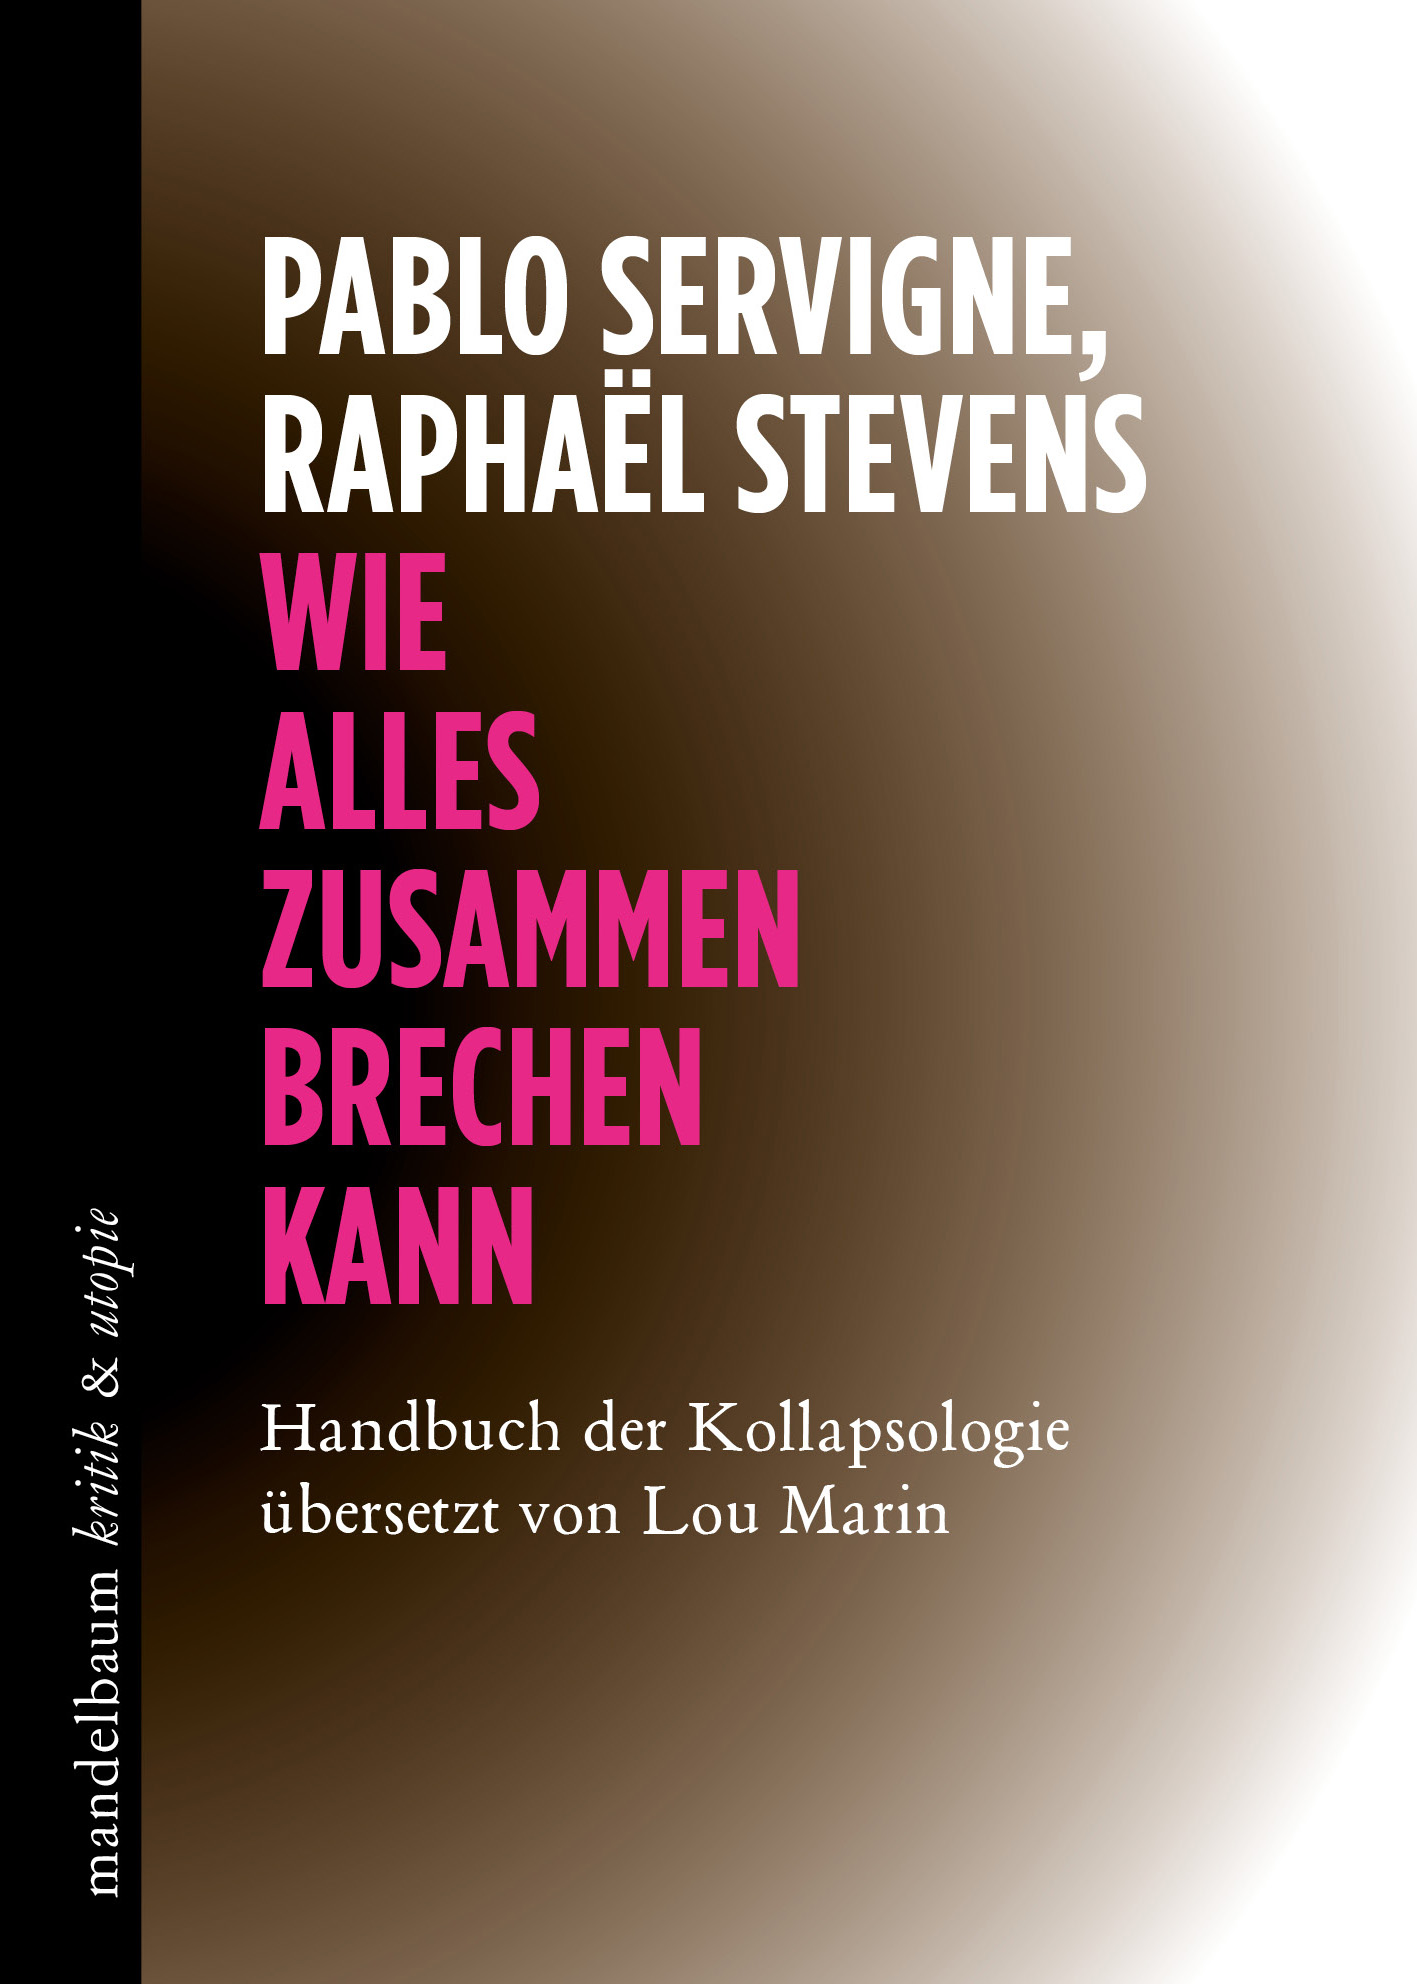 Pablo Servigne, Raphaël Stevens: „Wie alles zusammenbrechen kann. Handbuch der Kollapsologie“